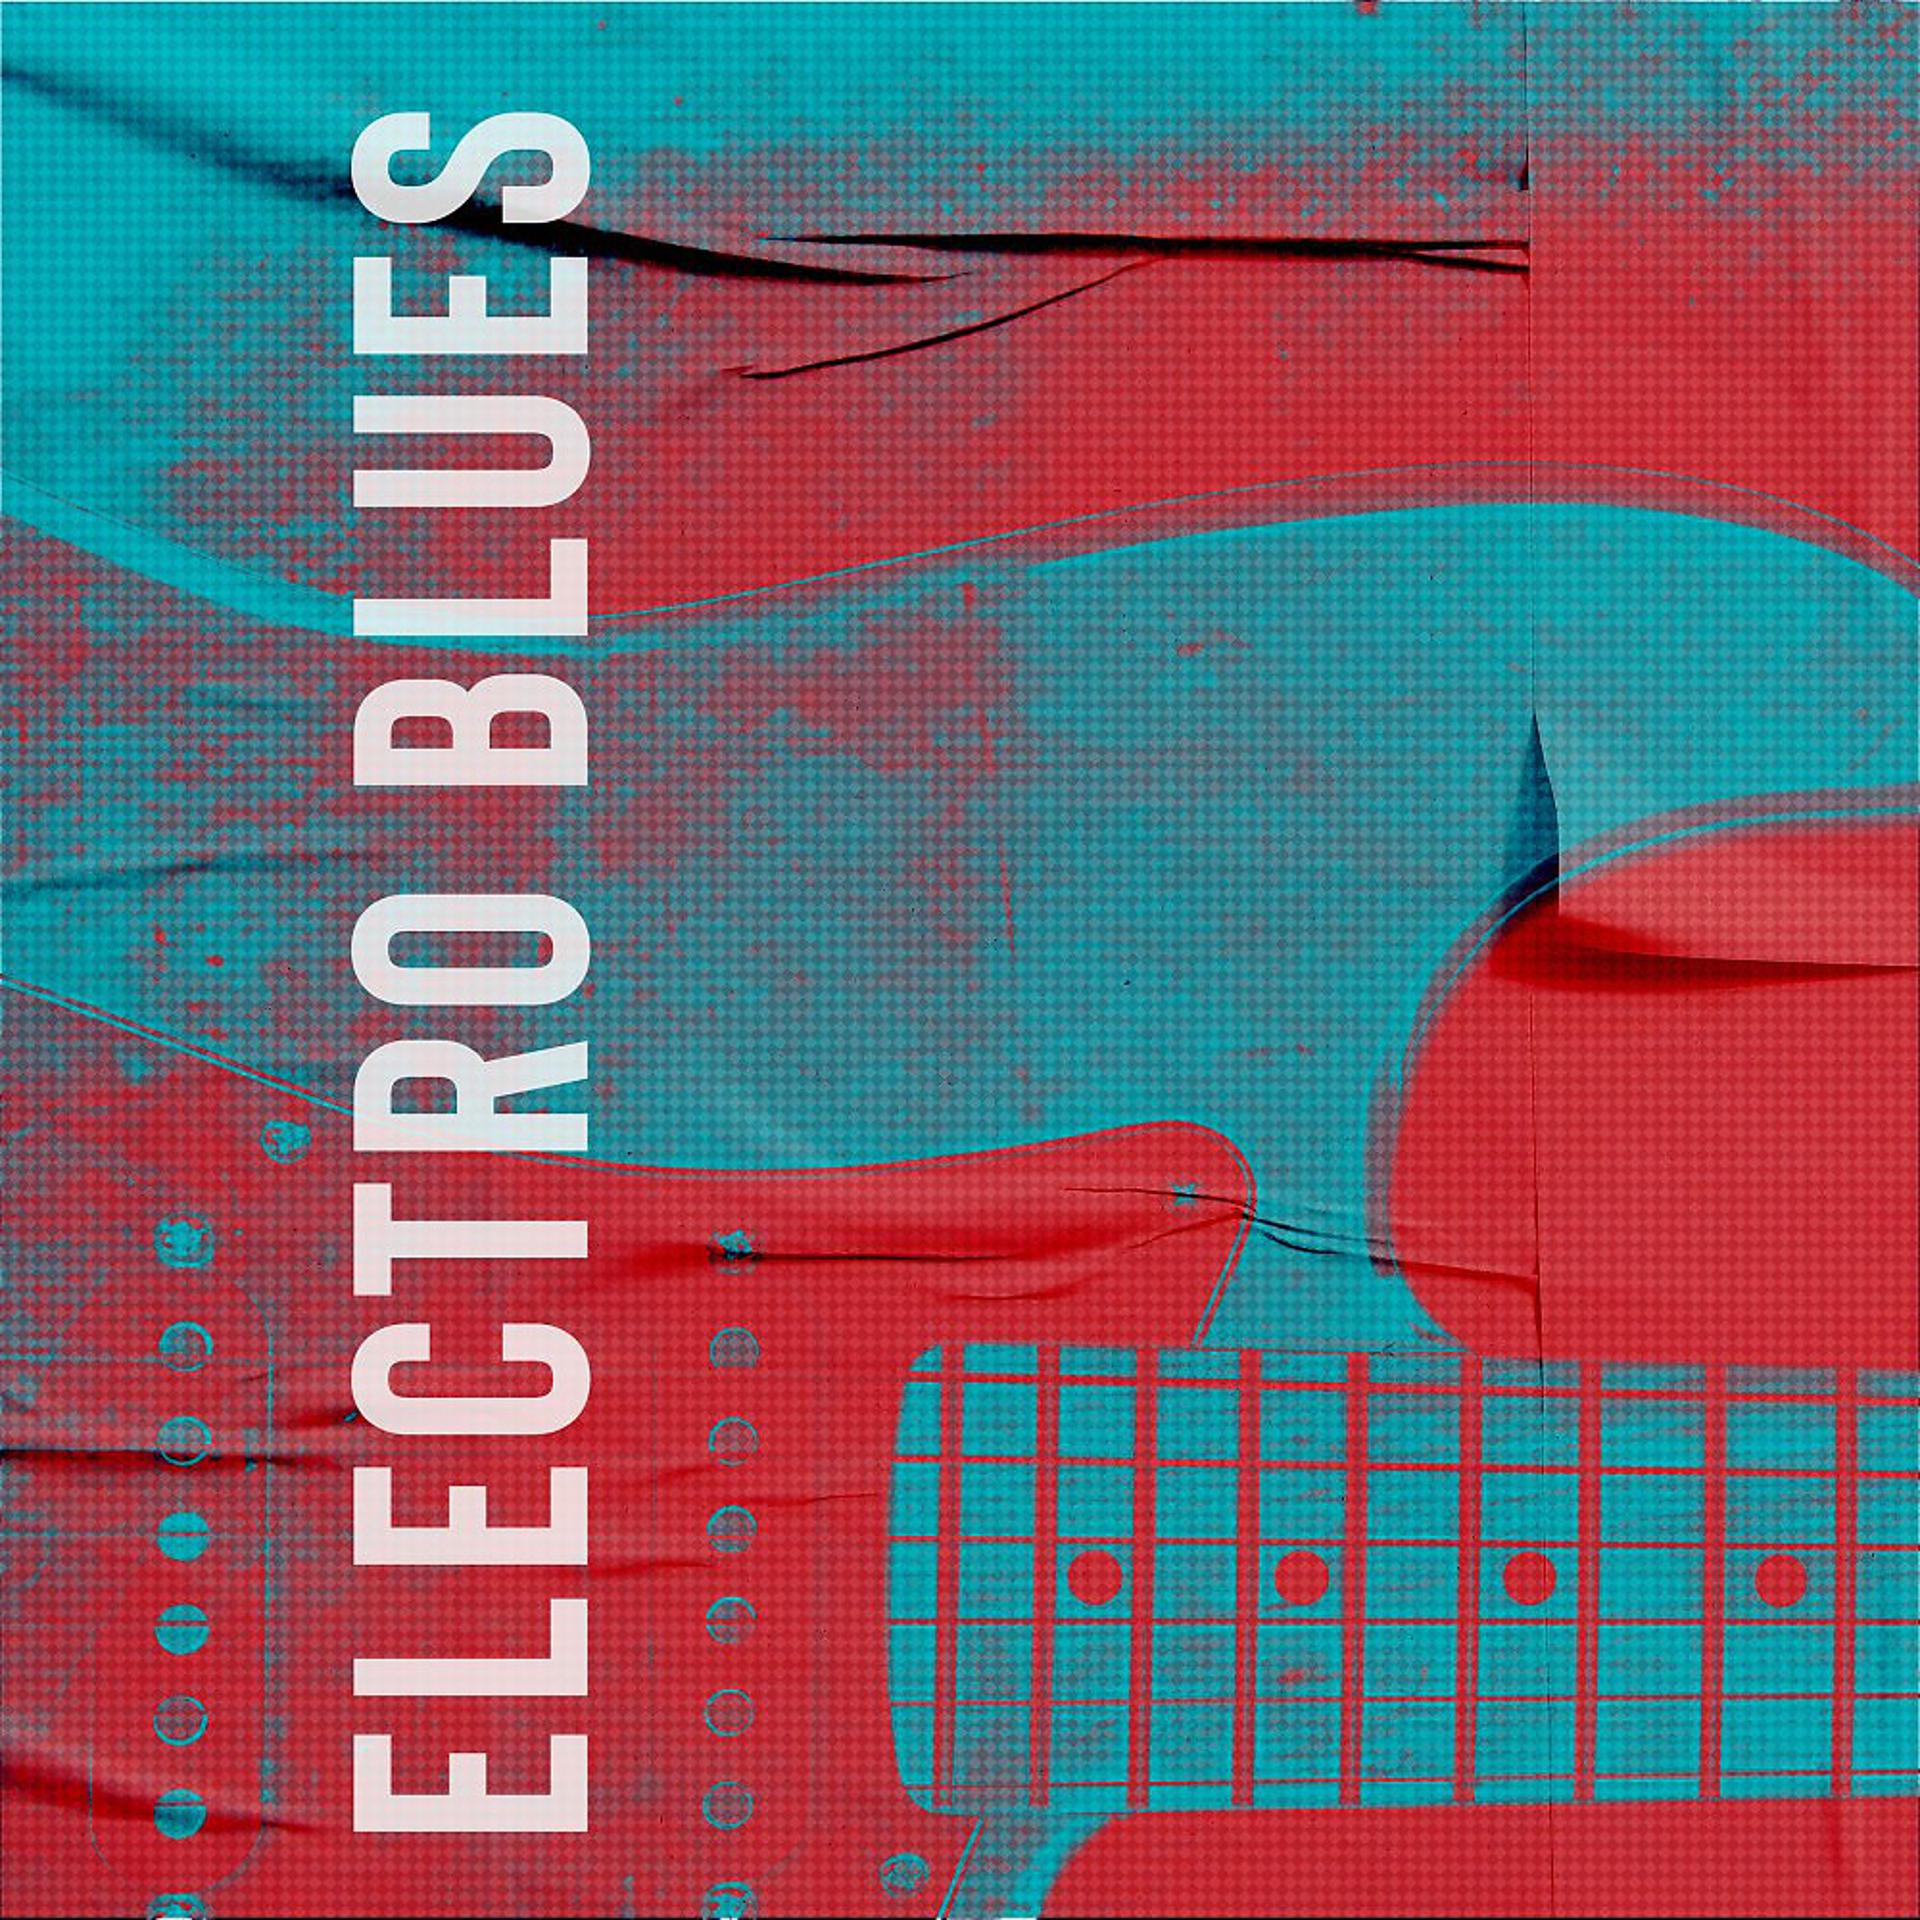 Постер альбома Electro Blues